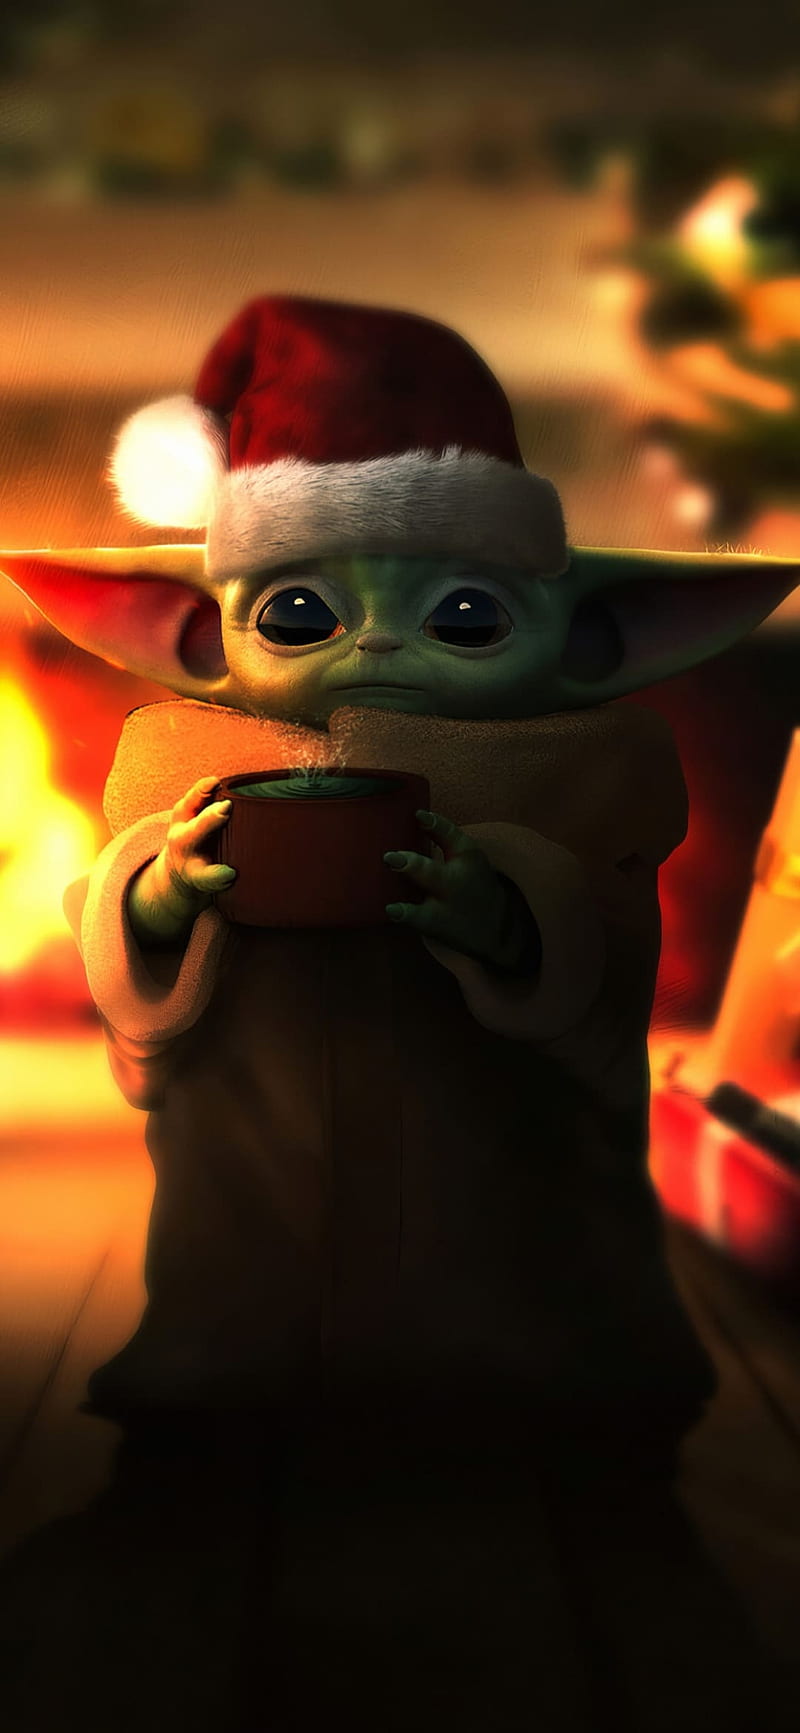 Hãy thưởng thức hình ảnh Baby Yoda đáng yêu cùng với không khí Giáng sinh, tạo nên một kì nghỉ tuyệt vời cho bạn. Với hình ảnh chất lượng HD, bạn sẽ được thưởng thức toàn bộ chi tiết tinh xảo của Baby Yoda và môi trường sống trong loạt phim \